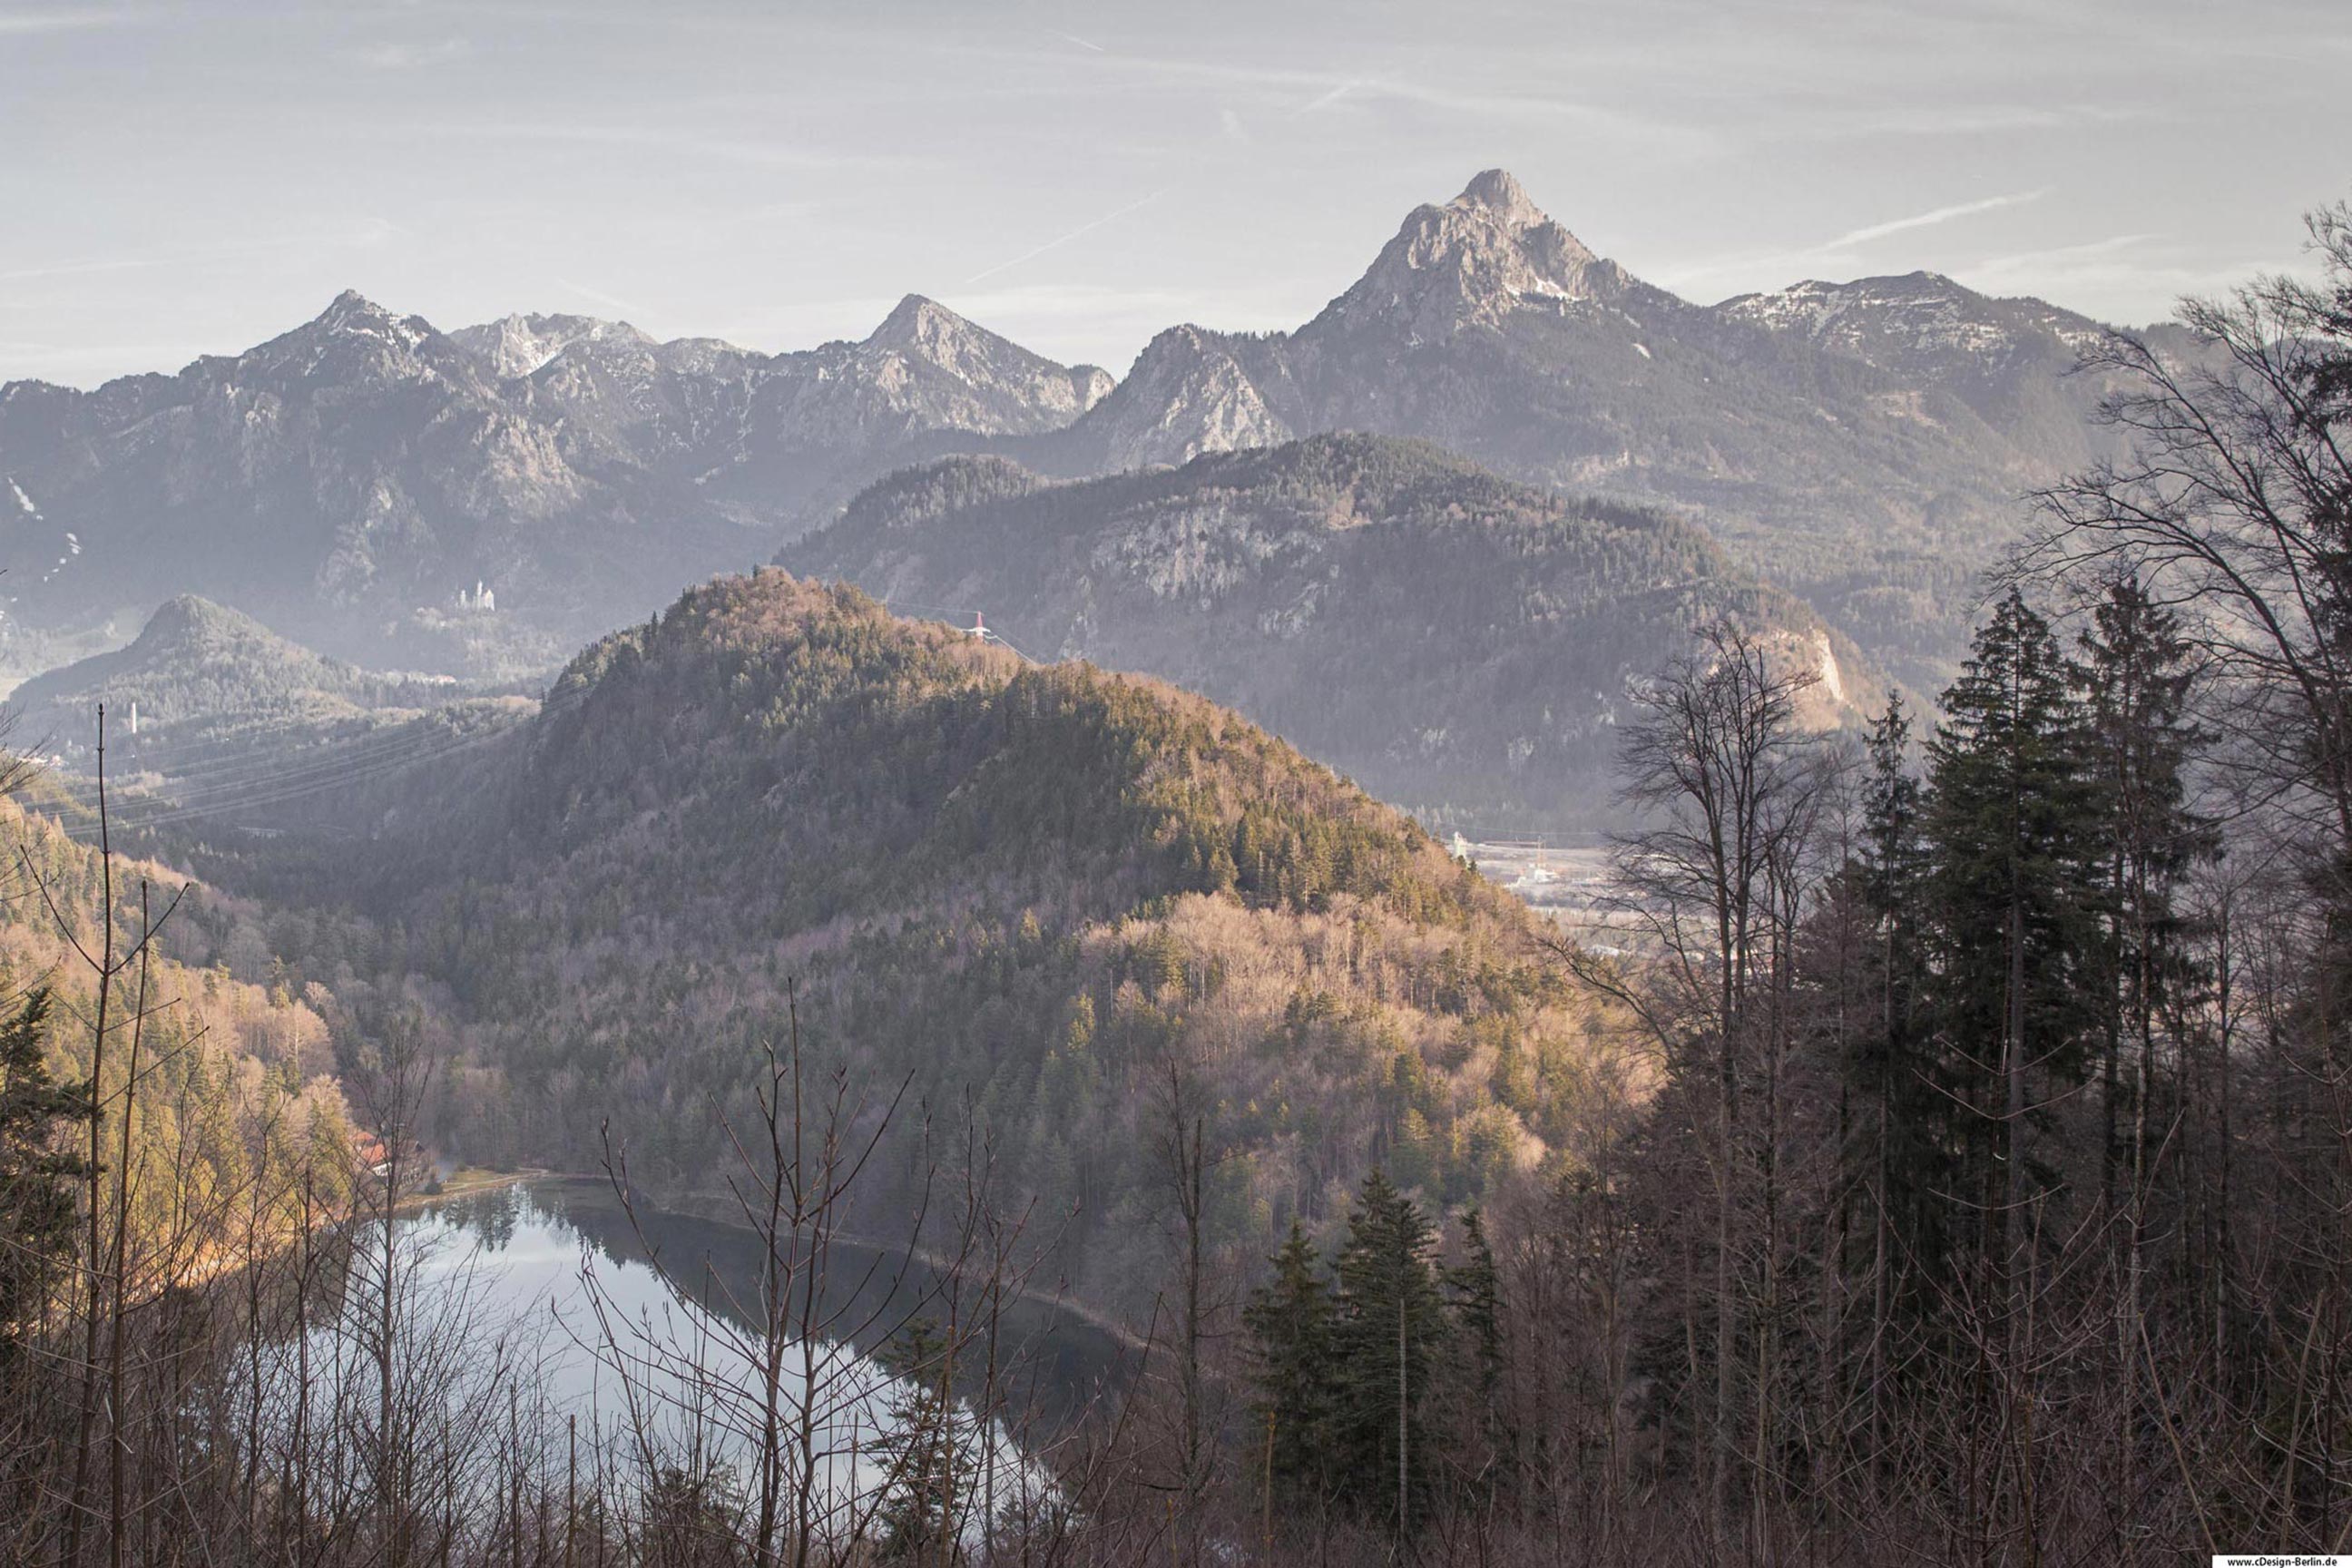 Ich befinde mich auf einem Berg und vor mir liegt der Alatsee. Dieser ist von Waldbergen umgeben. Der rechte Berg hat die Erscheinung eines Drachenrückens, der das kleine Haus am See beschützt. Hinter diesem Berg befinden sich weitere Berge, sowie die berühmte Zugspitze, der höchste Berg Deutschlands. Fernab des Bildes sieht man als Silhouette das Schloss Schwanstein. Am unteren Rand des Bildes sieht man einen Mischwald. Dieses Foto entstand in Österreich an einem Herbsttag.